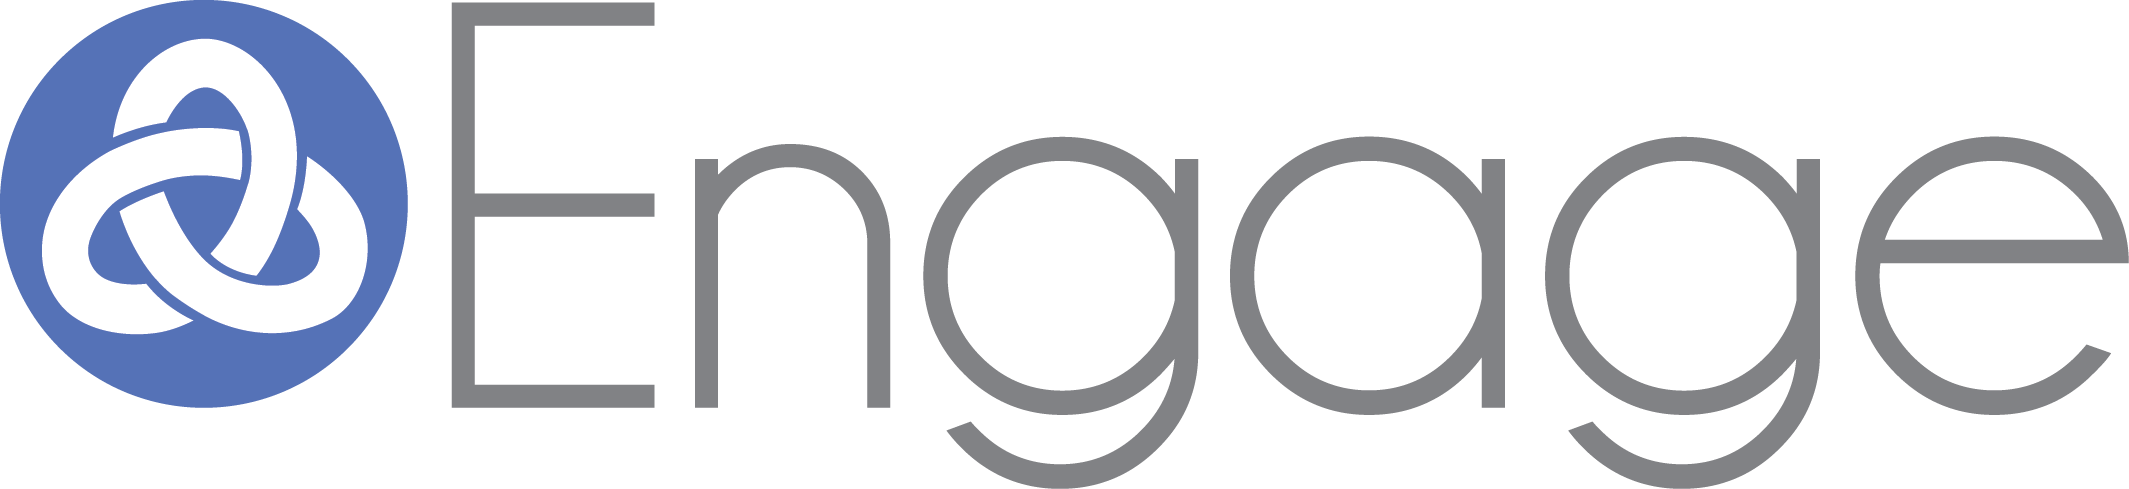 Engage Treatment Program Logo